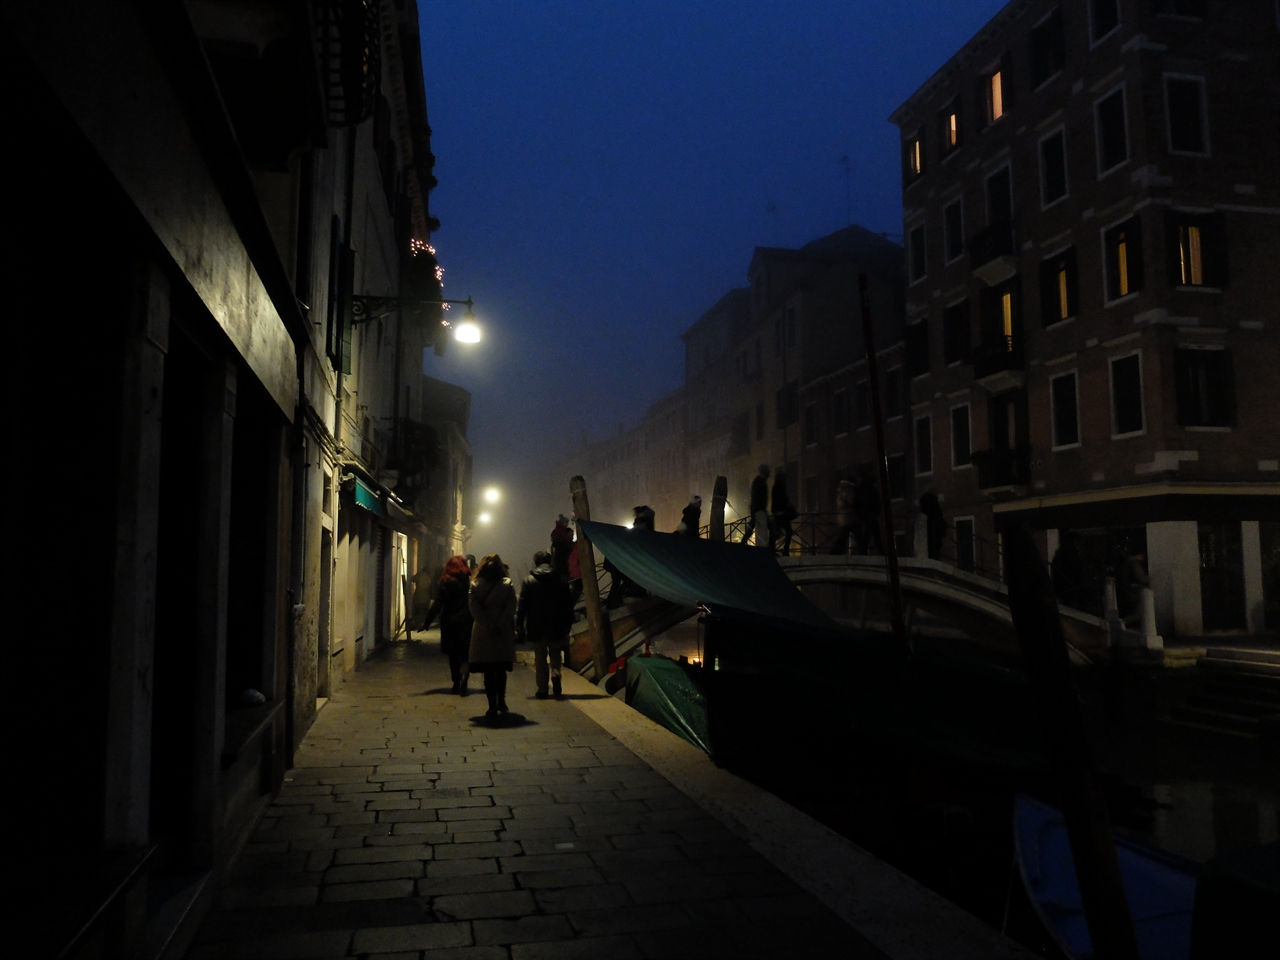 베네치아의 밤 안개는 이토록 은은한 실루엣을 만들어 냅니다. 